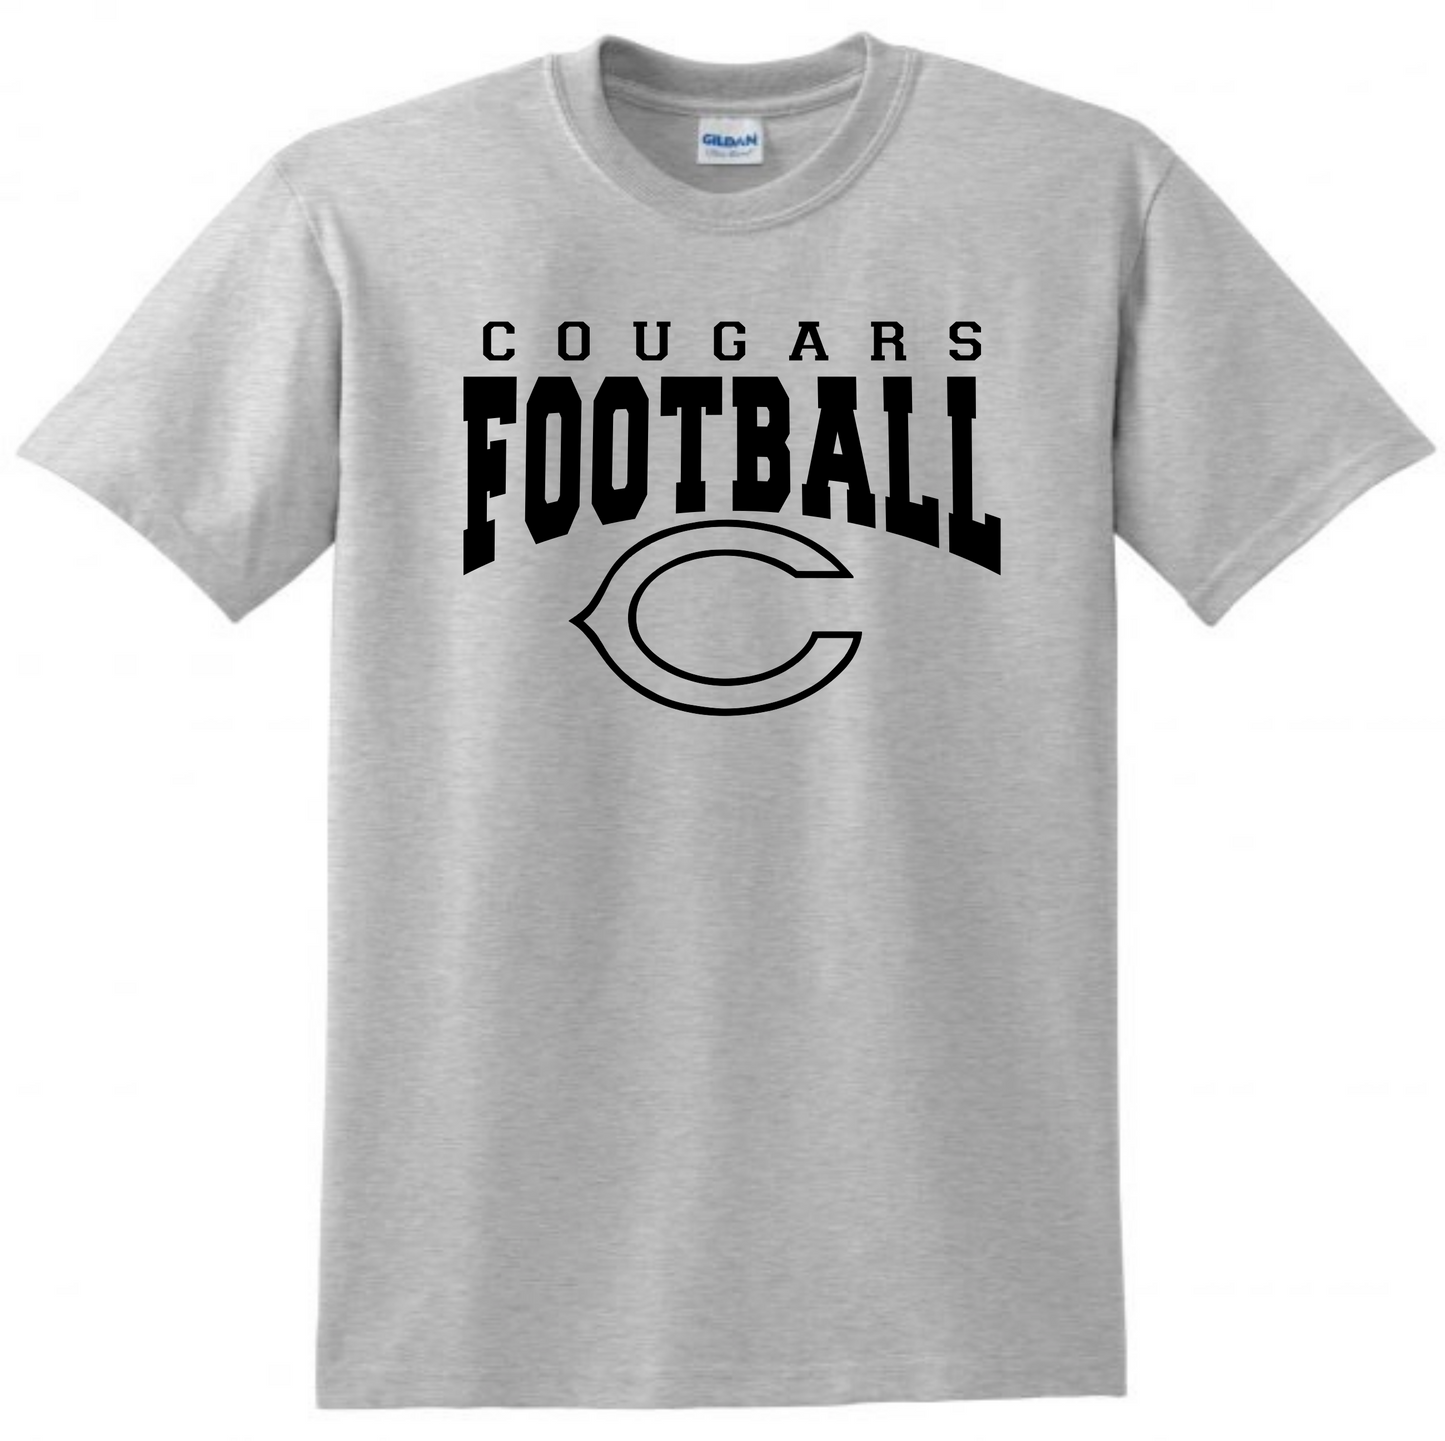 Cougars Football Tshirt